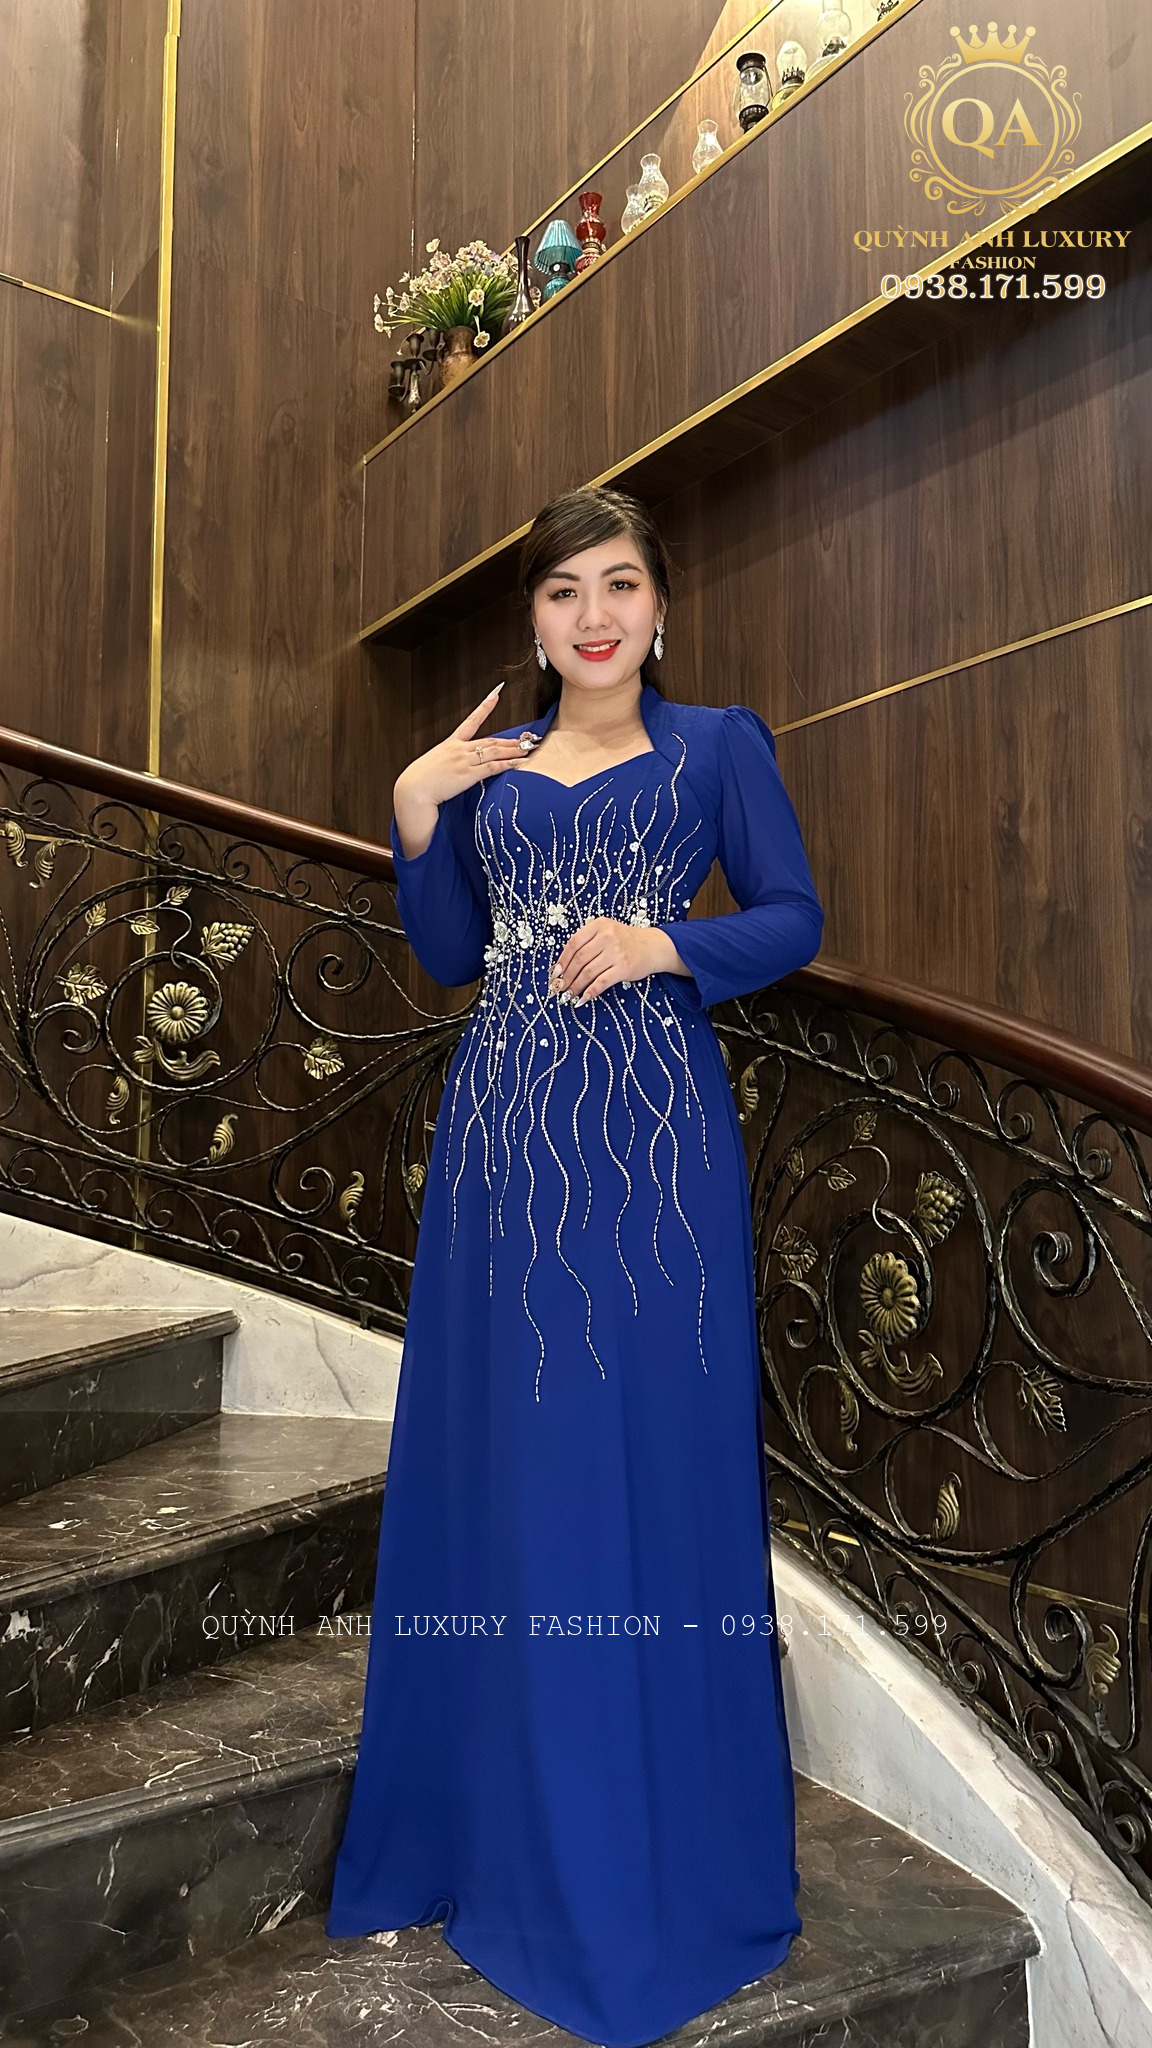 Bộ sưu tập đầm cổ nữ hoàng cao cấp tại Quỳnh Anh Luxury